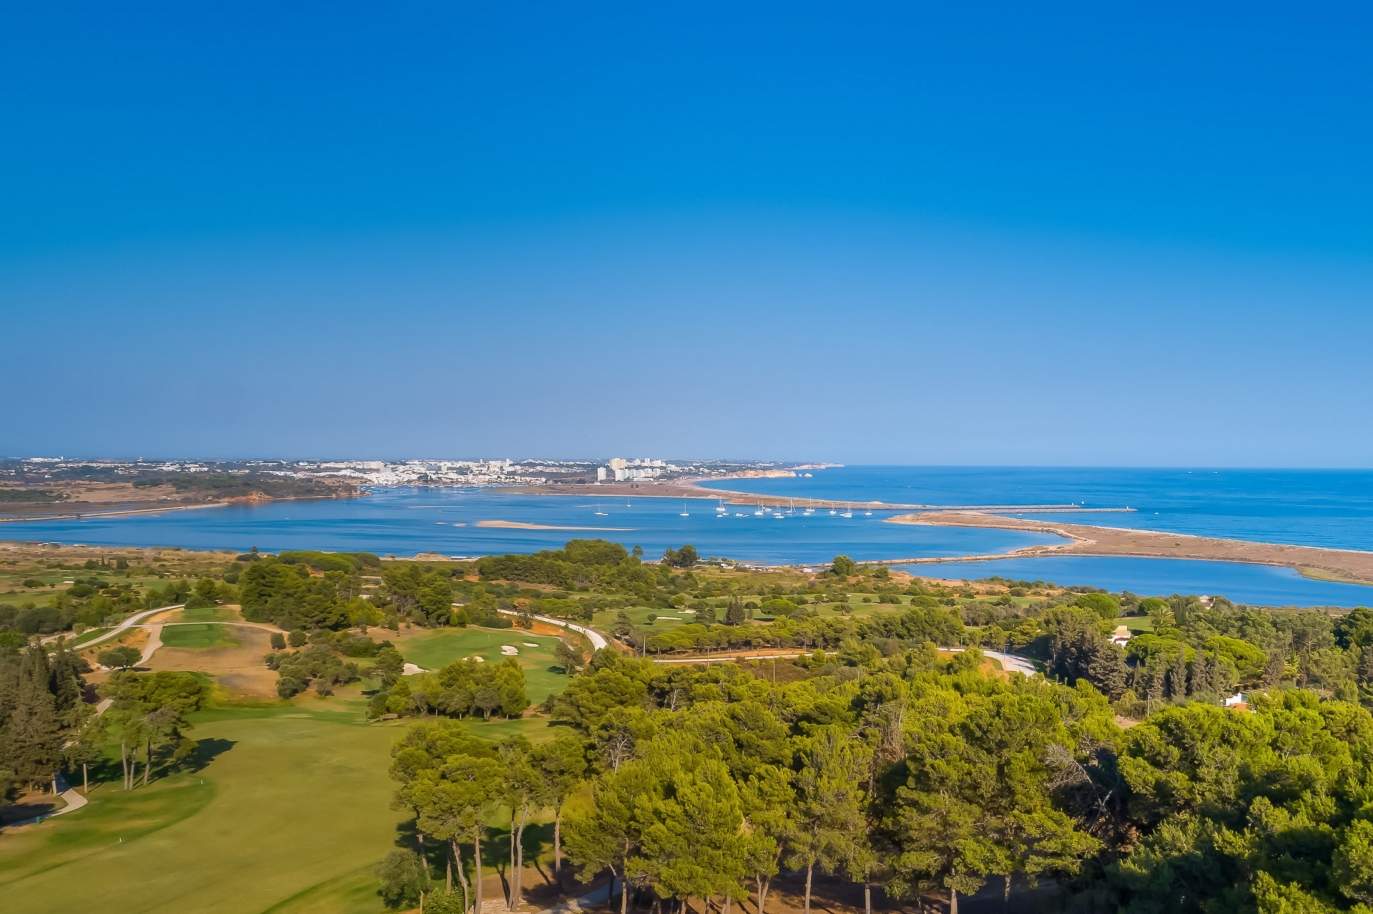 Terrain à vendre dans un complexe de golf, Lagos, Algarve, Portugal_122918